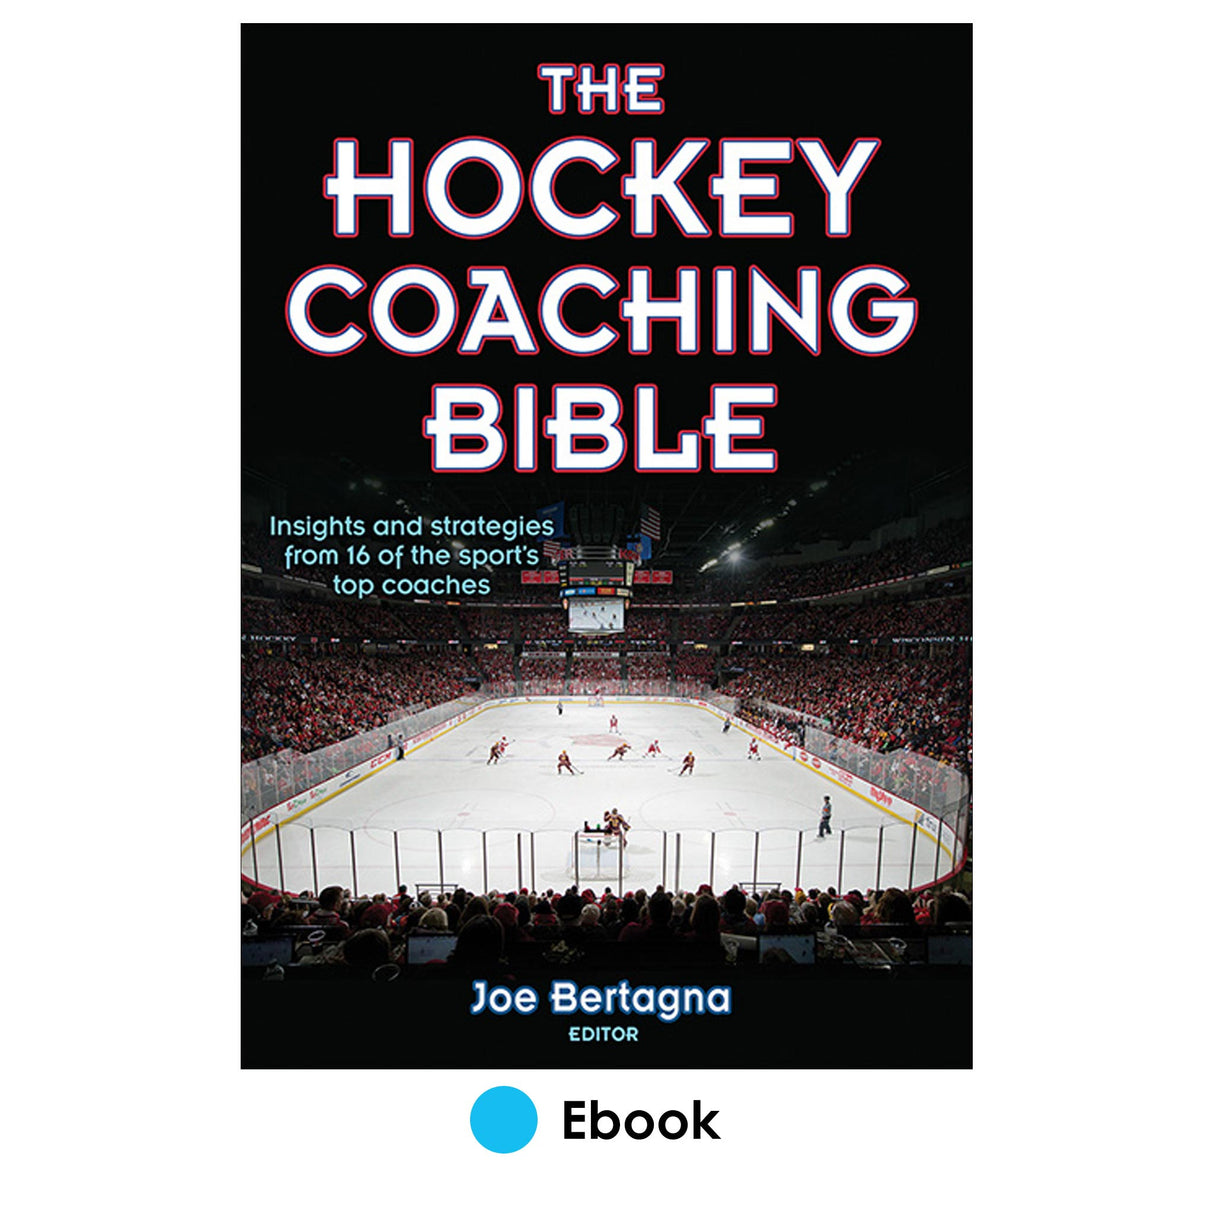 Hockey Coaching Bible PDF, The